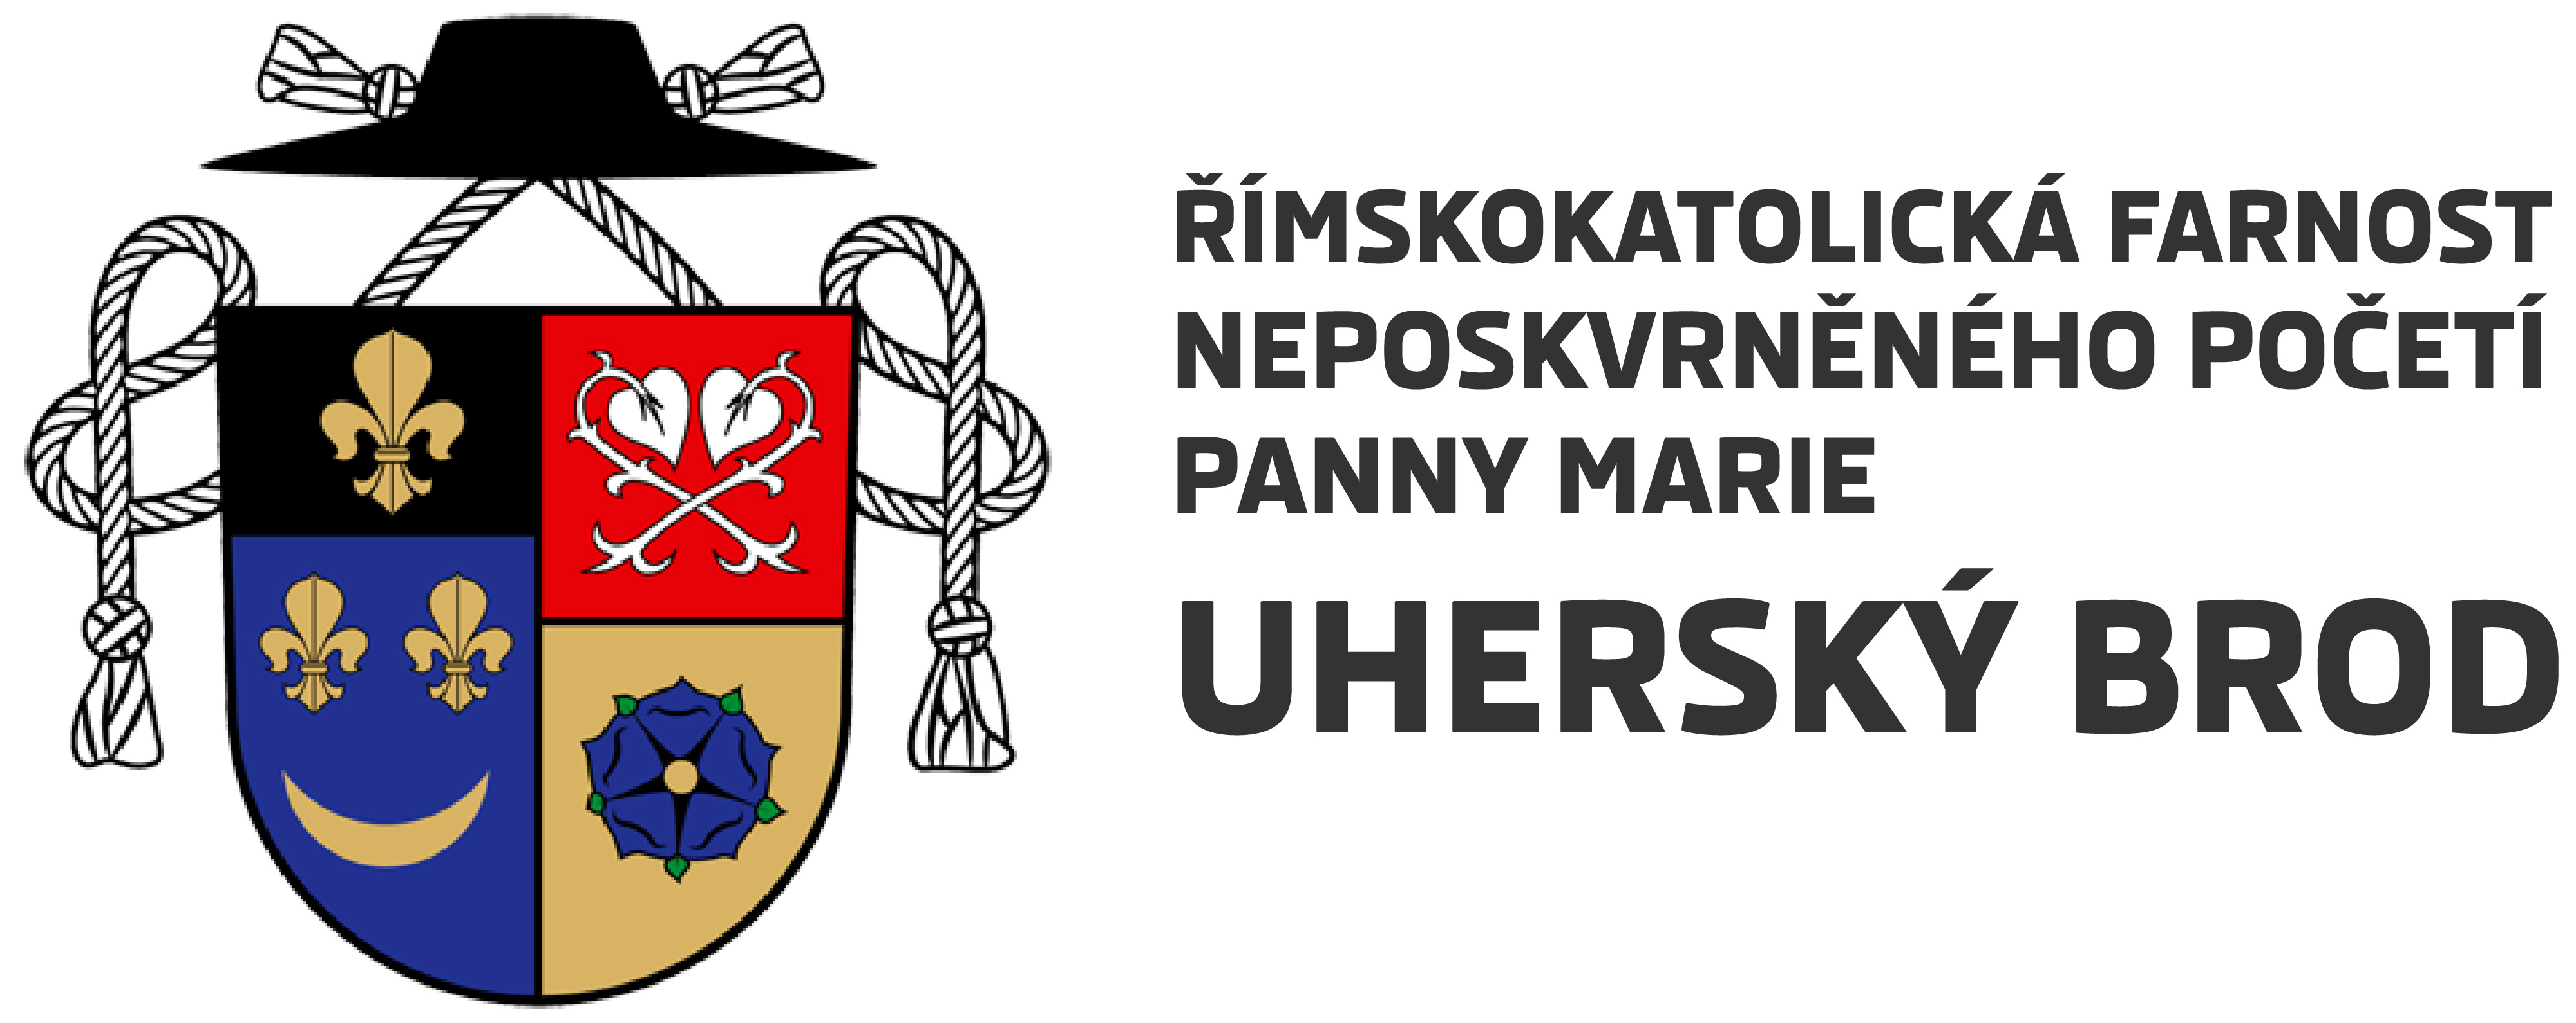 Logo kontakt - Římskokatolická farnost Uherský Brod